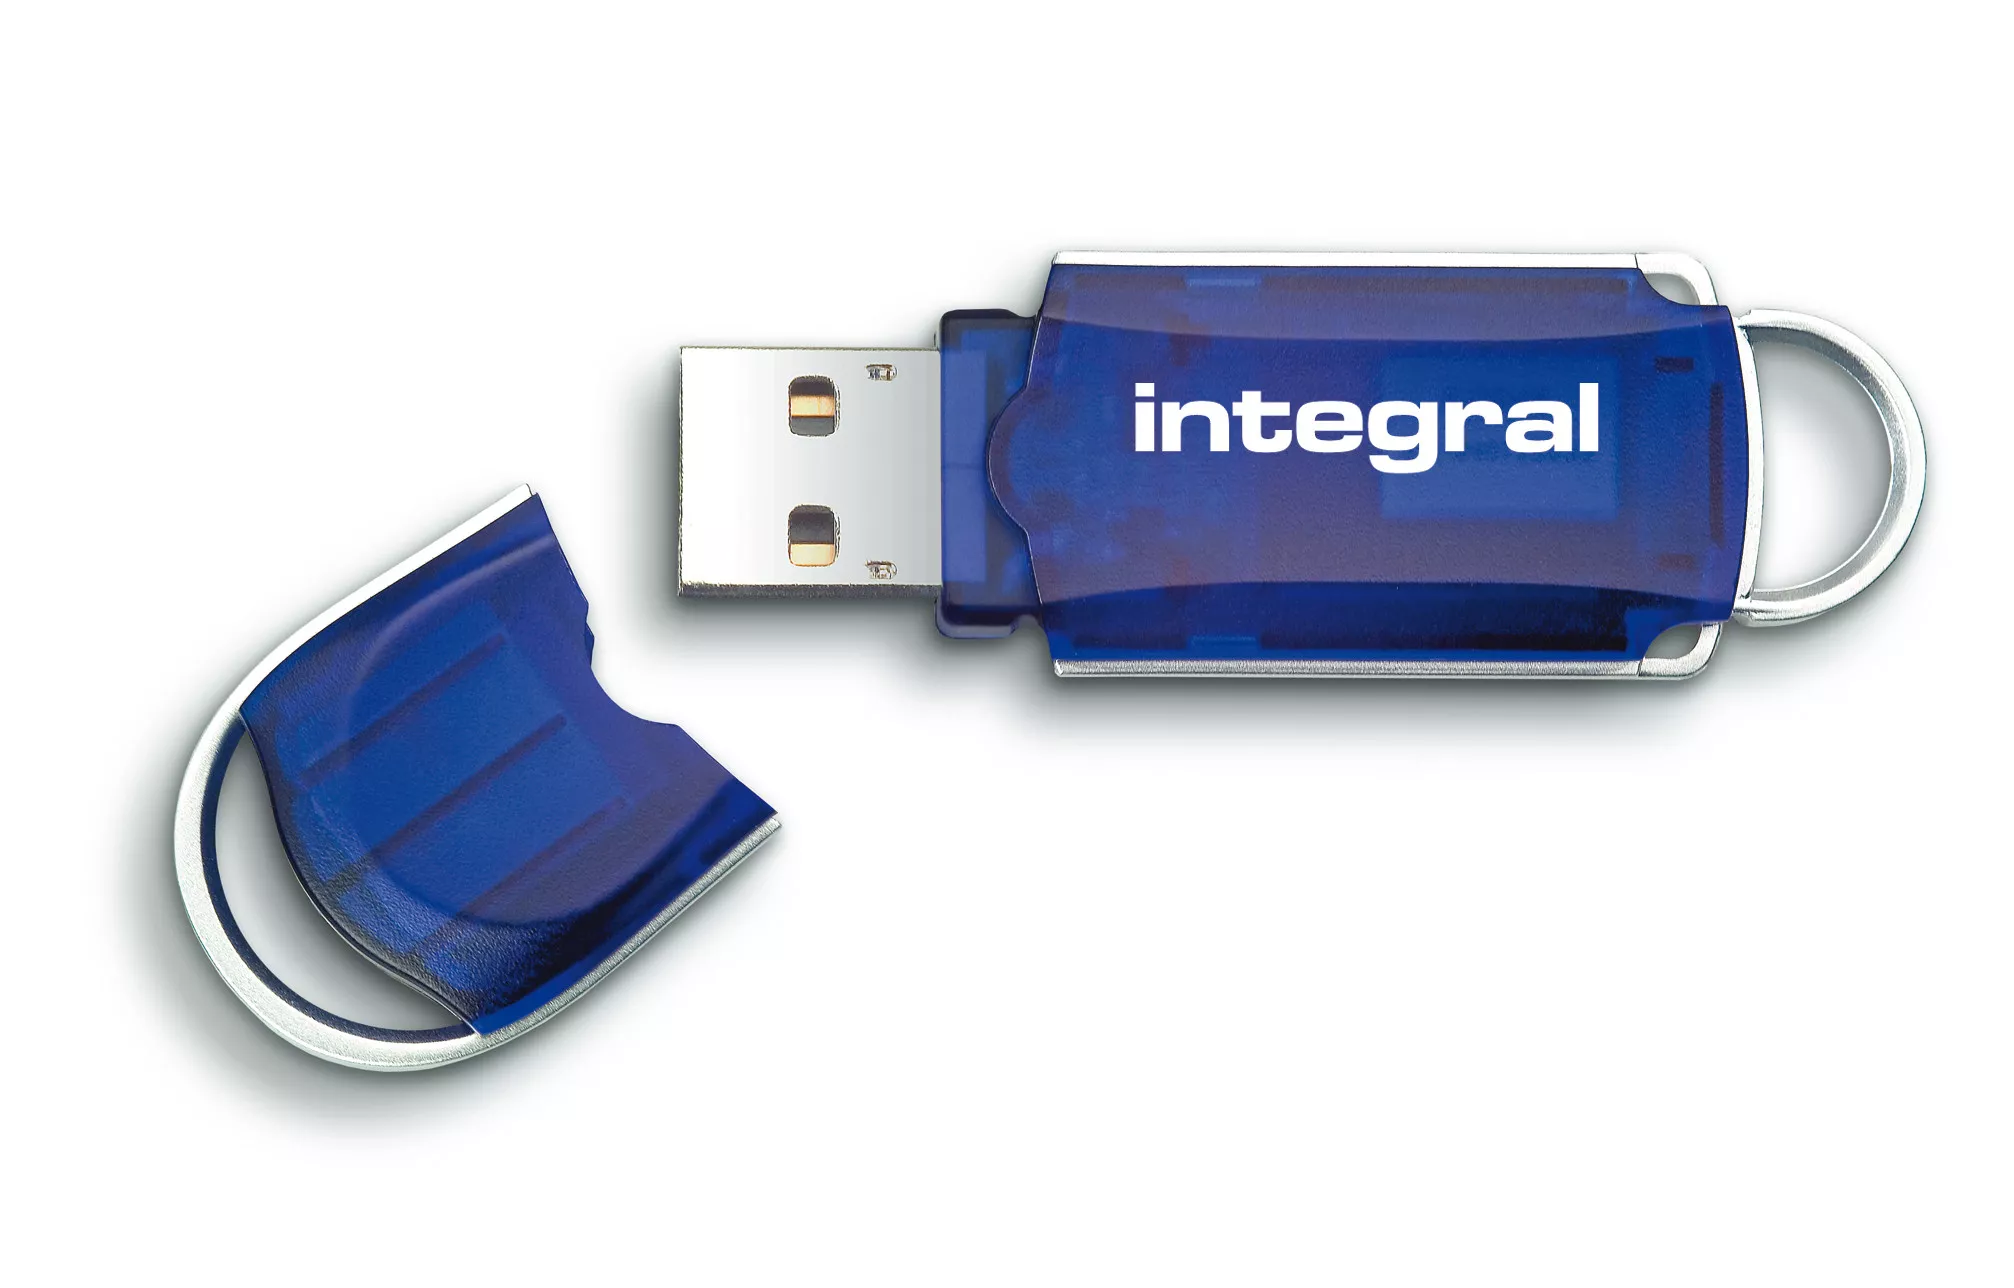 Achat Integral 8GB USB2.0 DRIVE COURIER BLUE INTEGRAL au meilleur prix